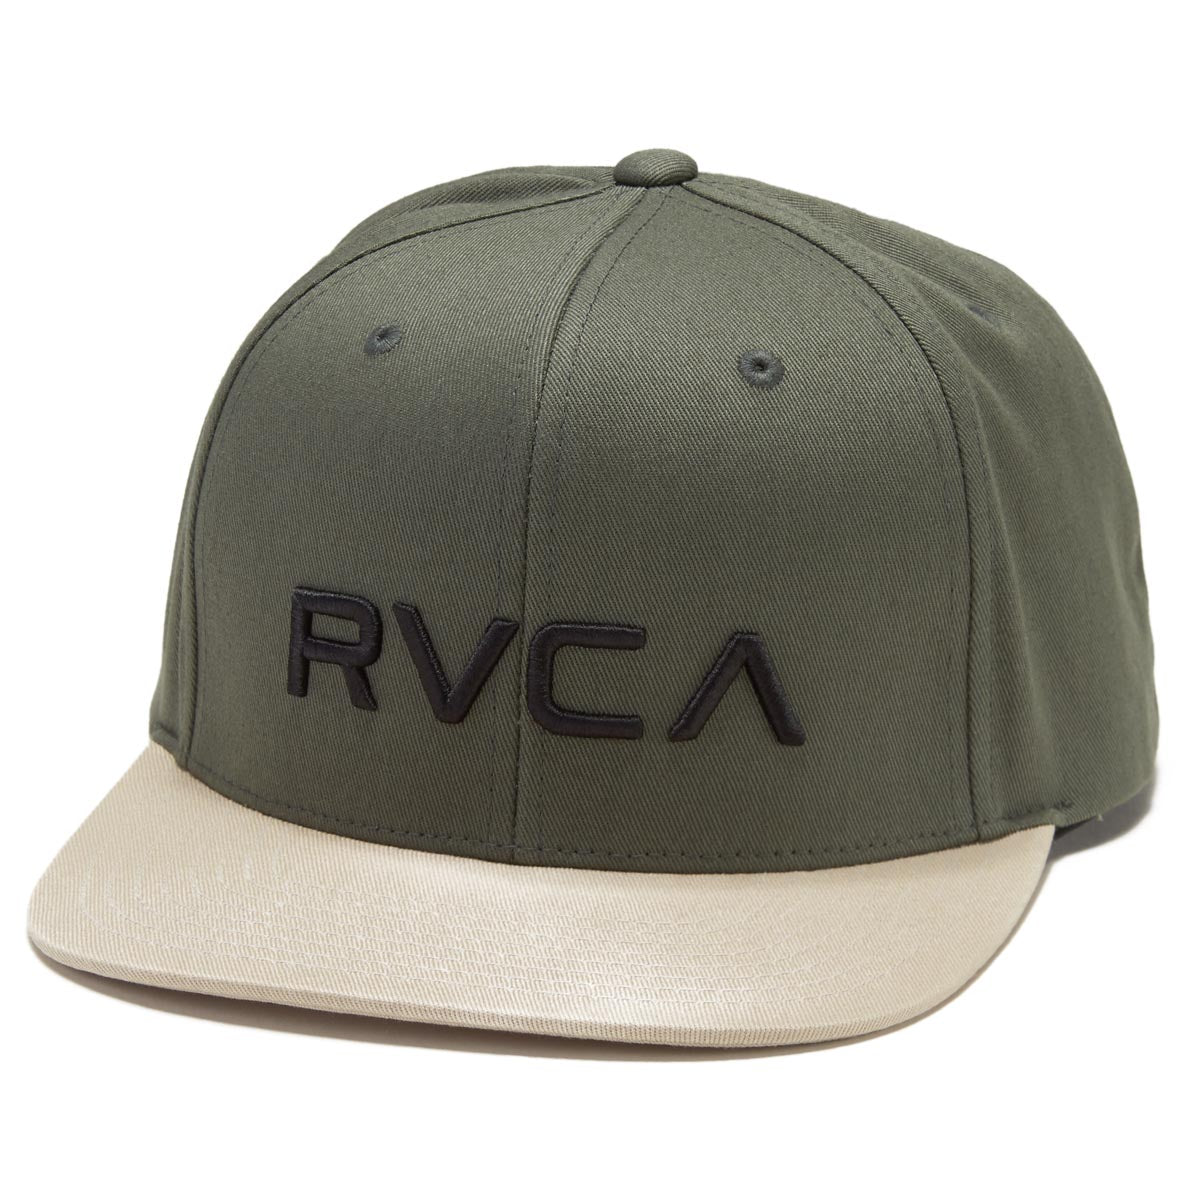 RVCA Twill Snapback II Hat - Green image 1